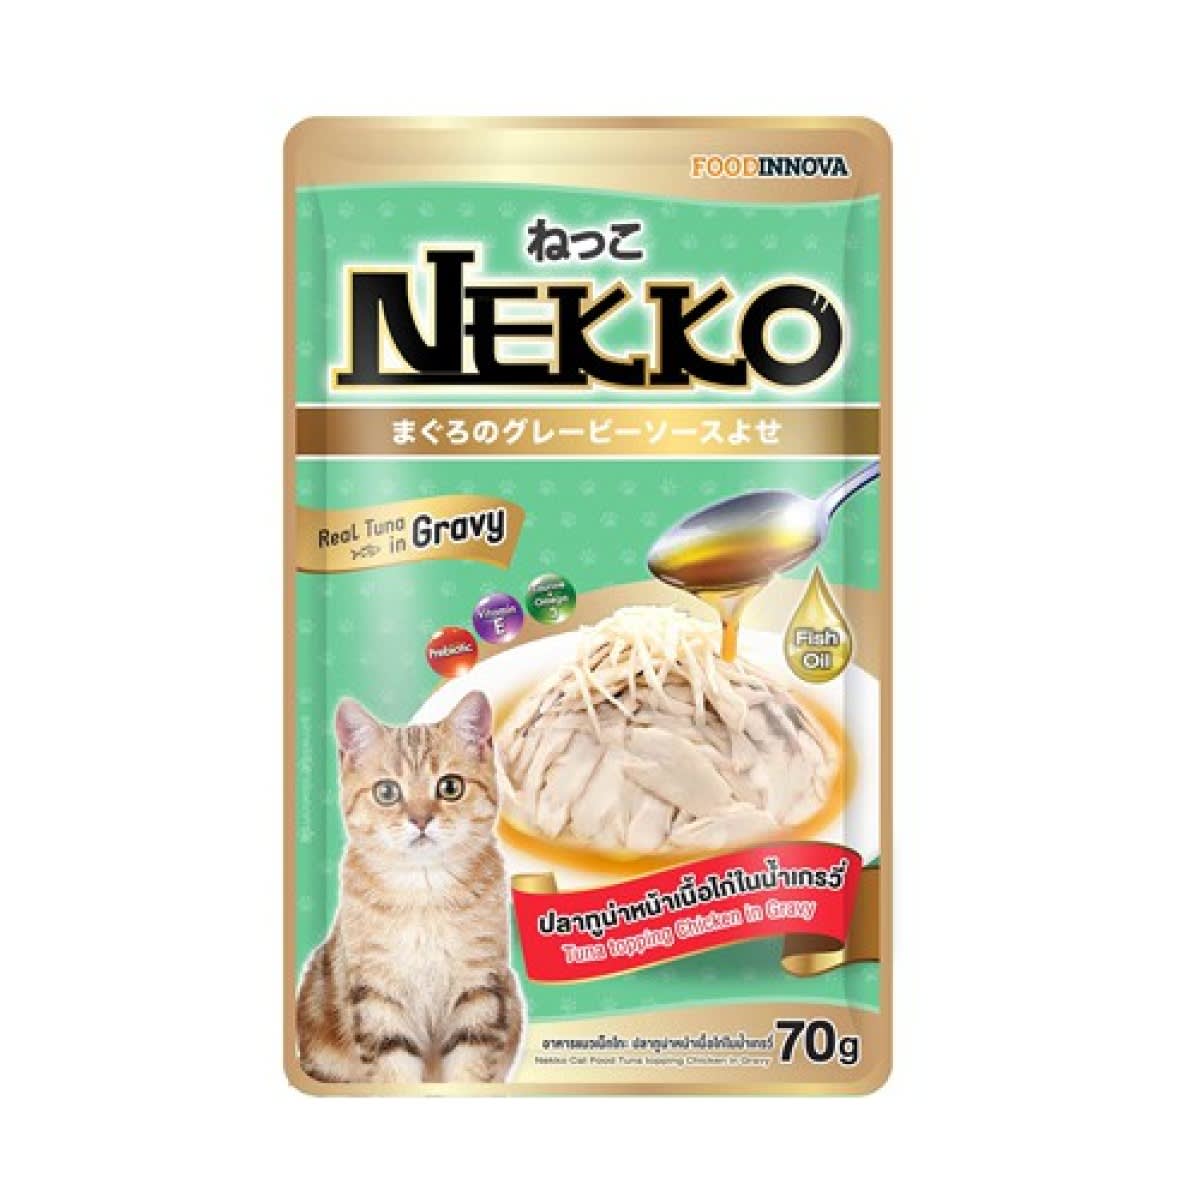 Nekko เน็กโกะ อาหารเปียก รสปลาทูน่าหน้าเนื้อไก่ในน้ำเกรวี่ สำหรับแมว 70 g